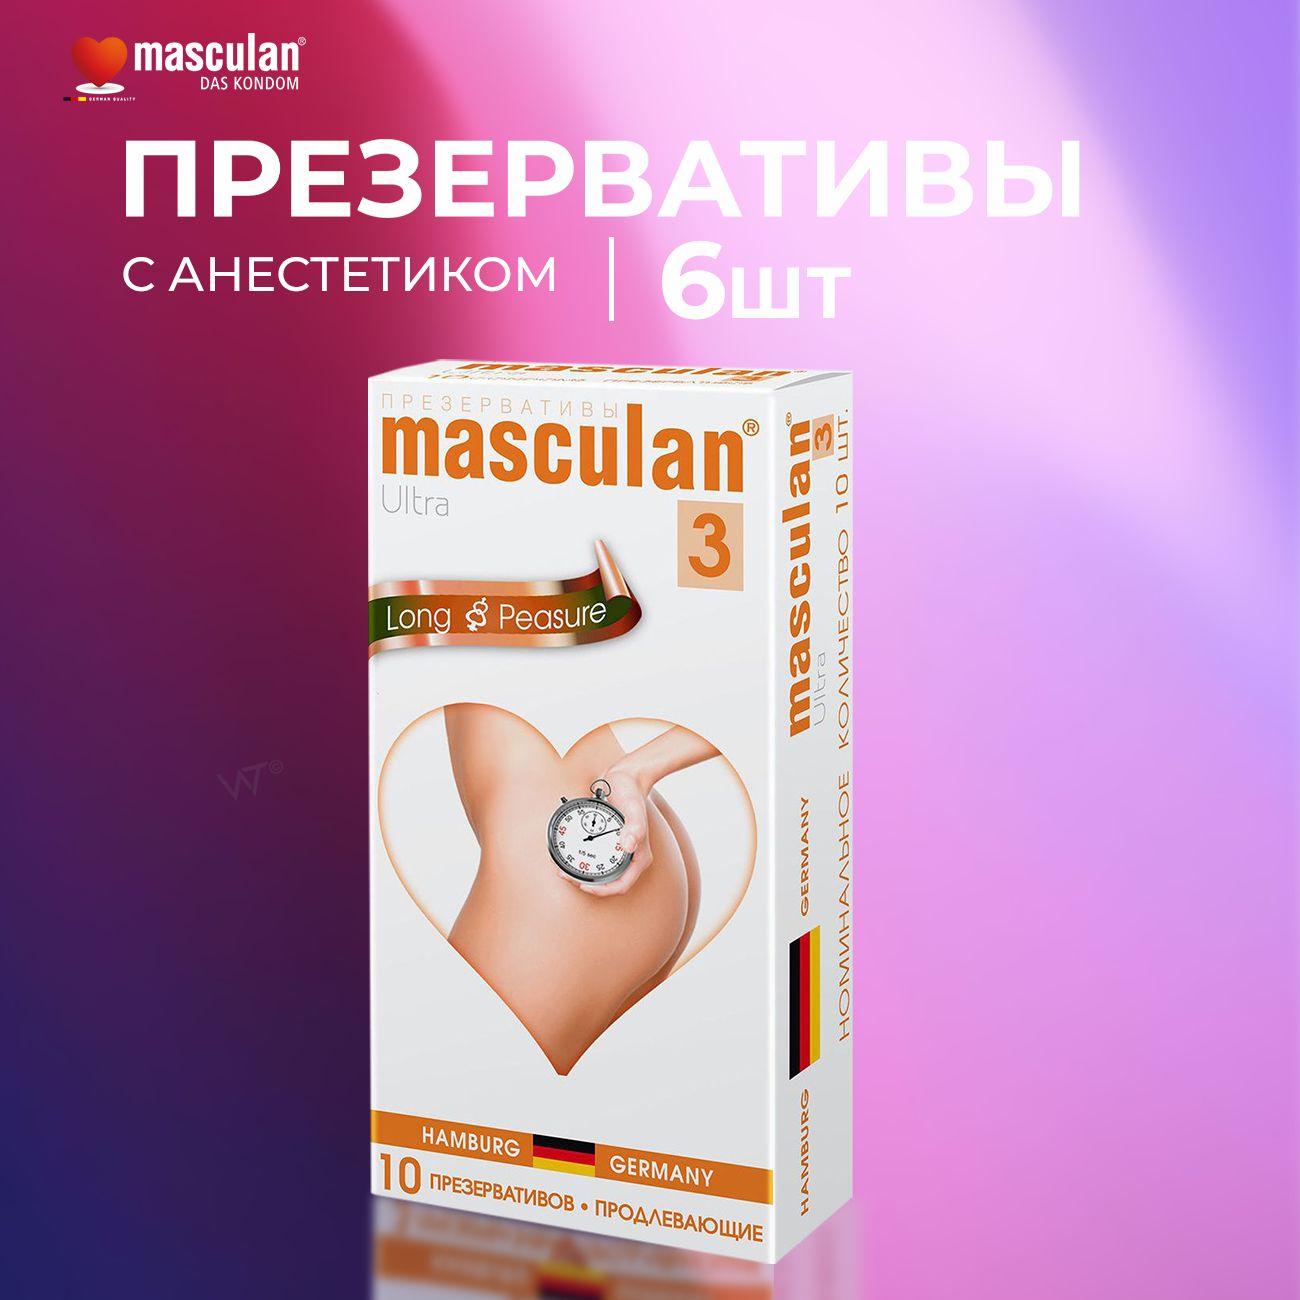 Masculan | Masculan Презервативы Masculan Extra Long Pleasure 10 шт ультратонкие с пупырышками, маскулан с анестетиком продлевающие половой акт, с продлевающим эффектом